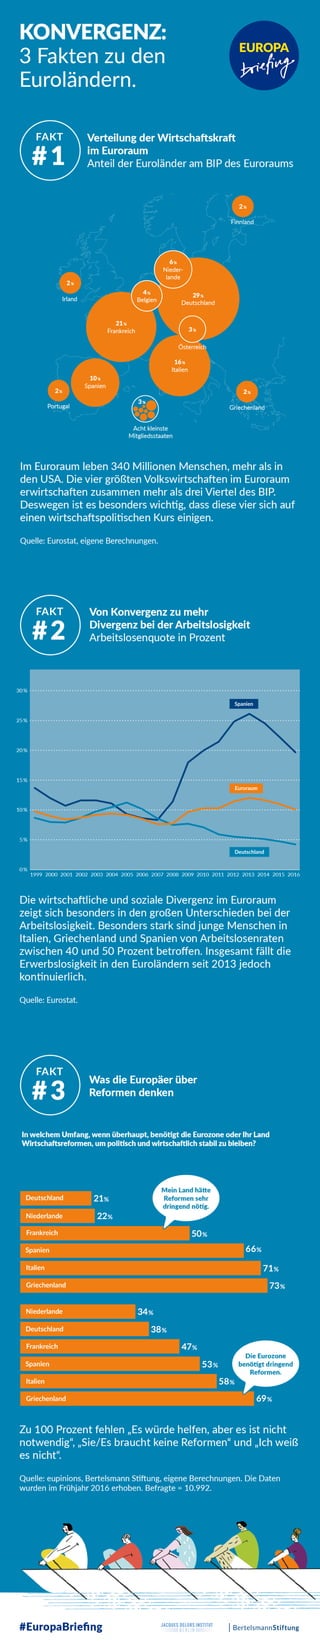 Infografik: Konvergenz - 3 Fakten zu den Euroländern